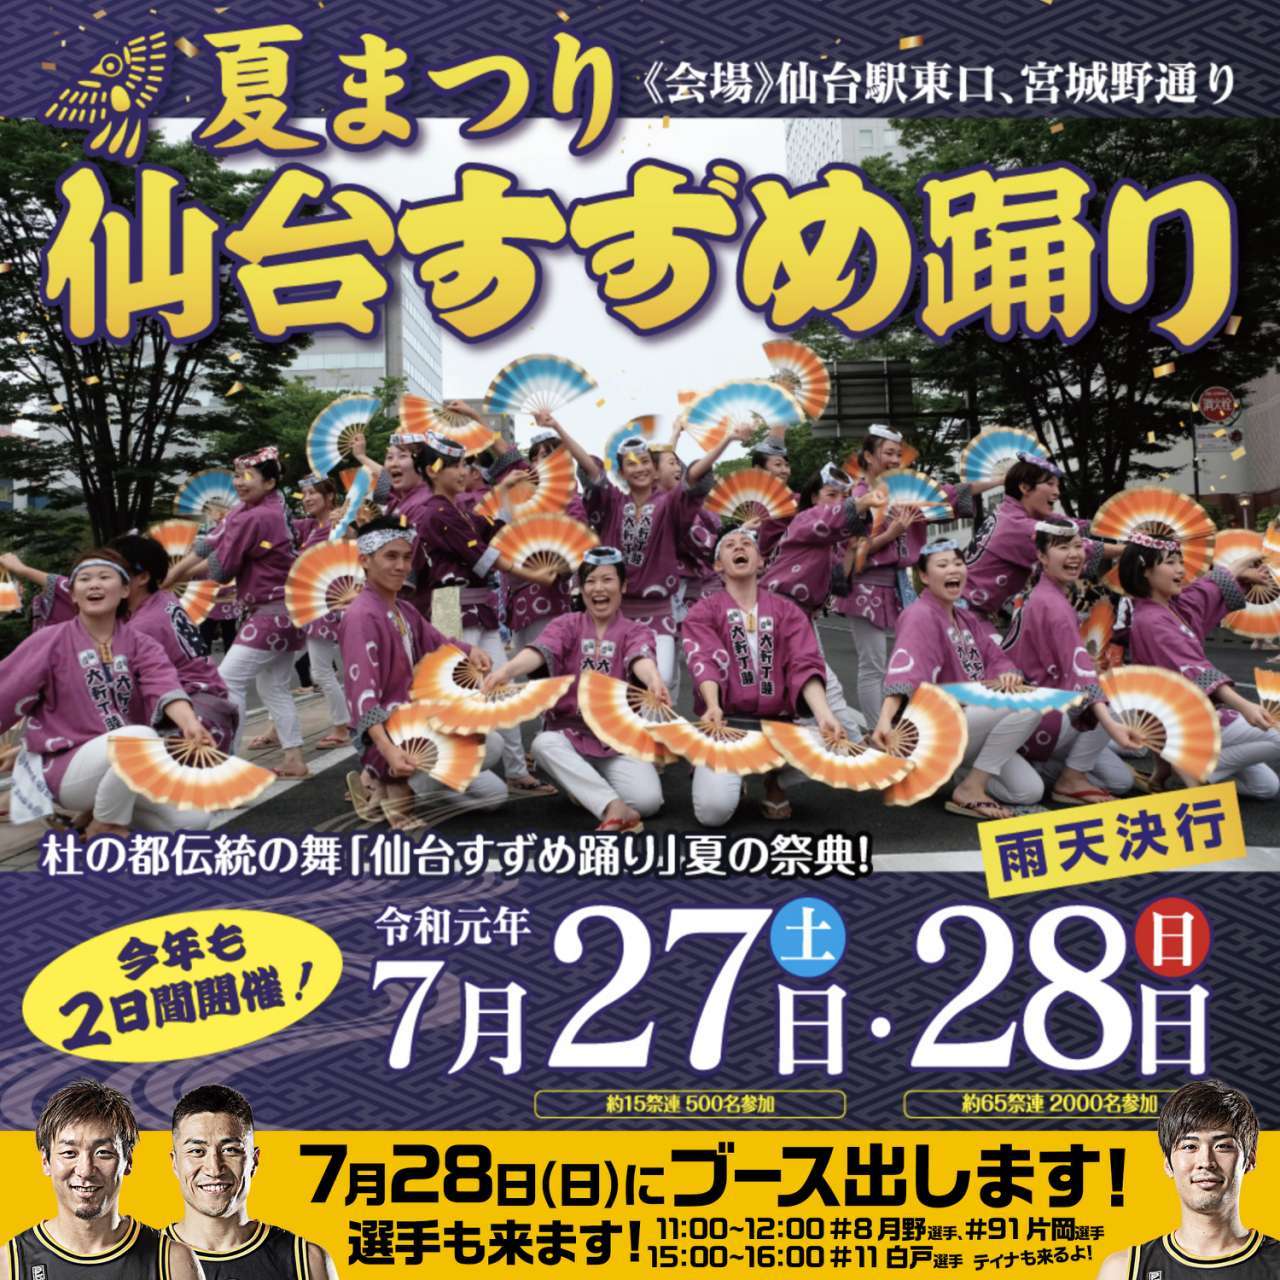 728日夏まつり 仙台すずめ踊りブース出店のお知らせ 仙台89ers